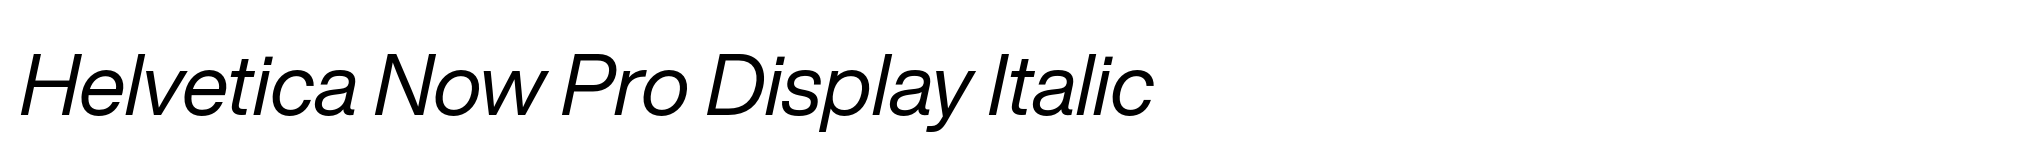 Helvetica Now Pro Display Italic image